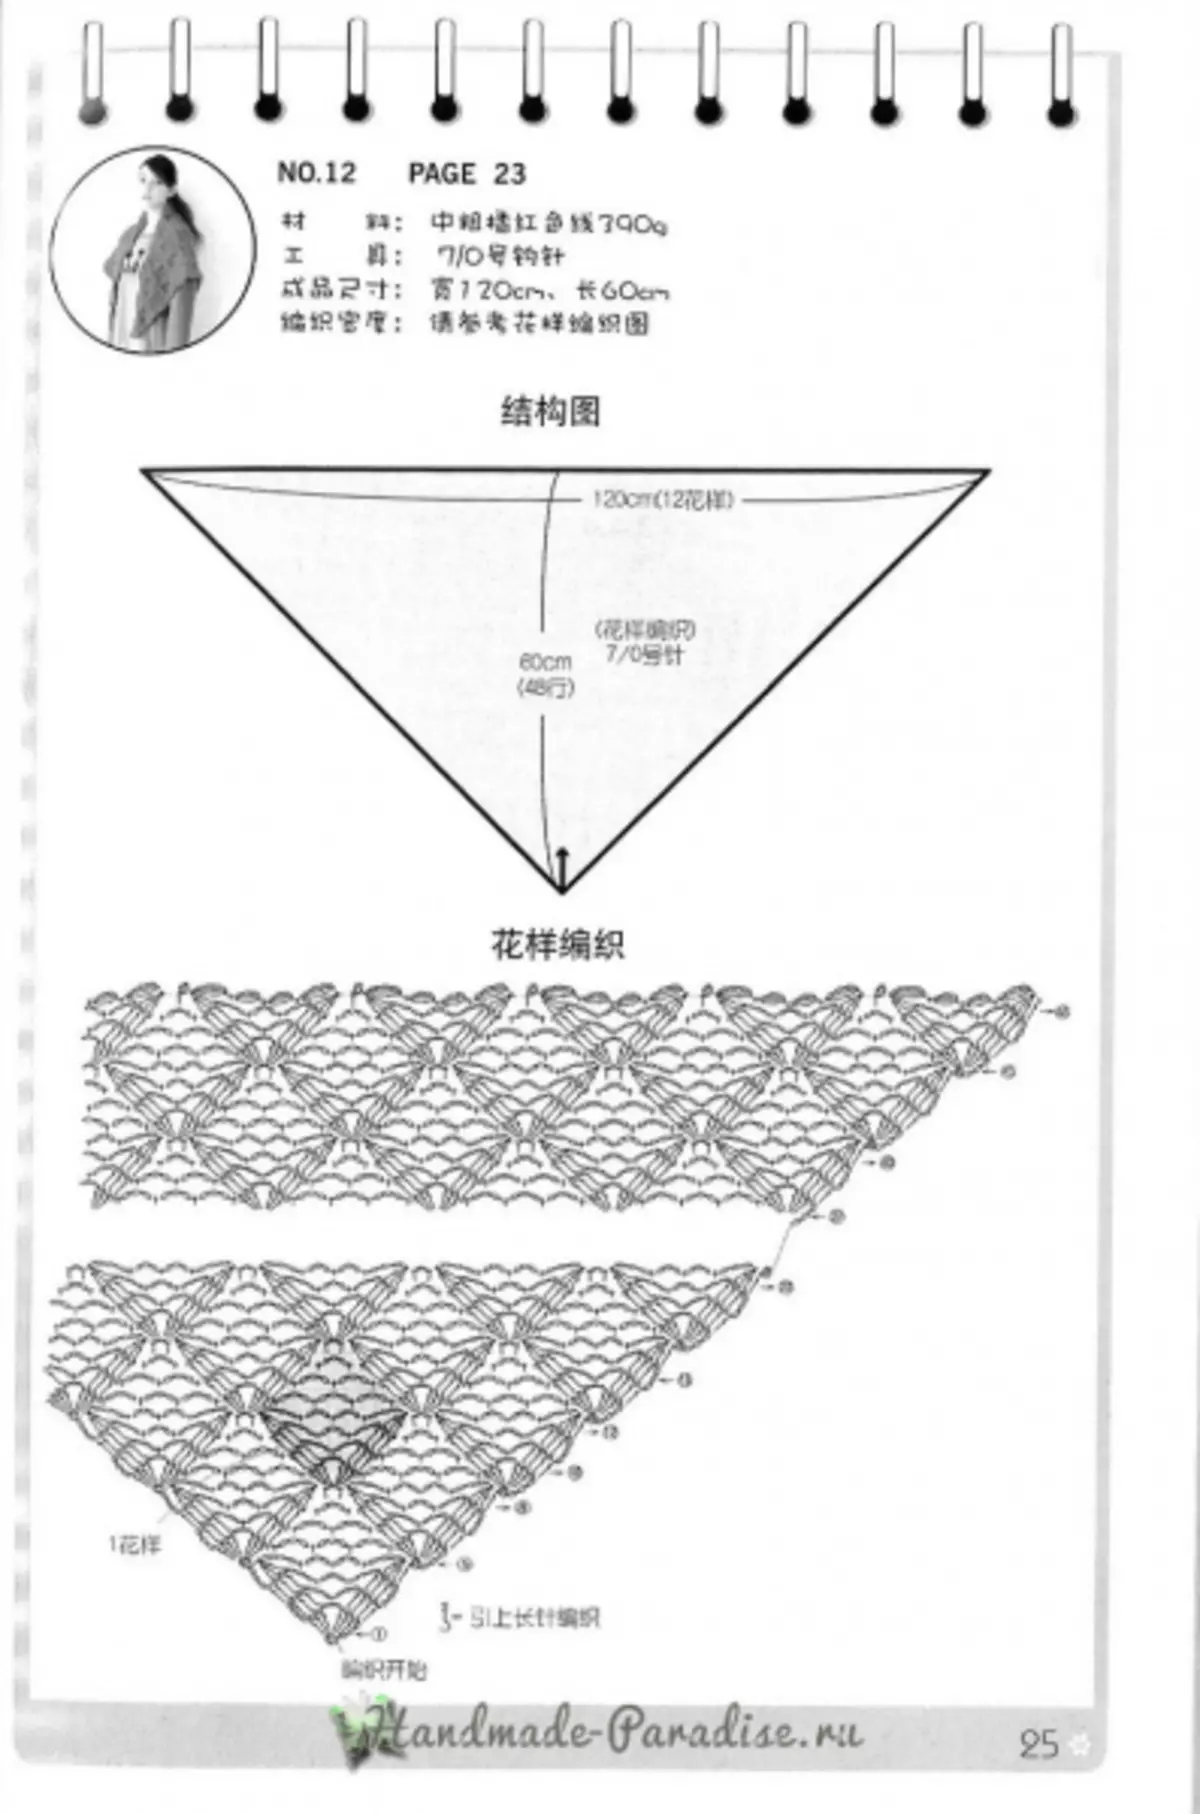 Thurje Cape dhe Ponço. Revistë japoneze me skema